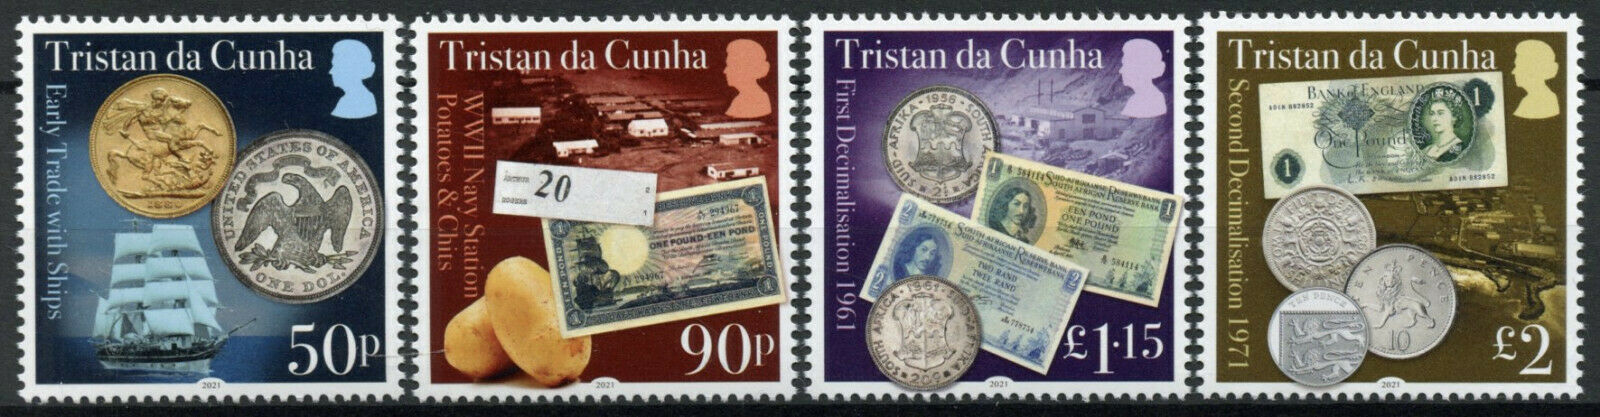 Tristan da Cunha 2021 MNH Coins on Stamps Decimilisation Banknotes Ships 4v Set